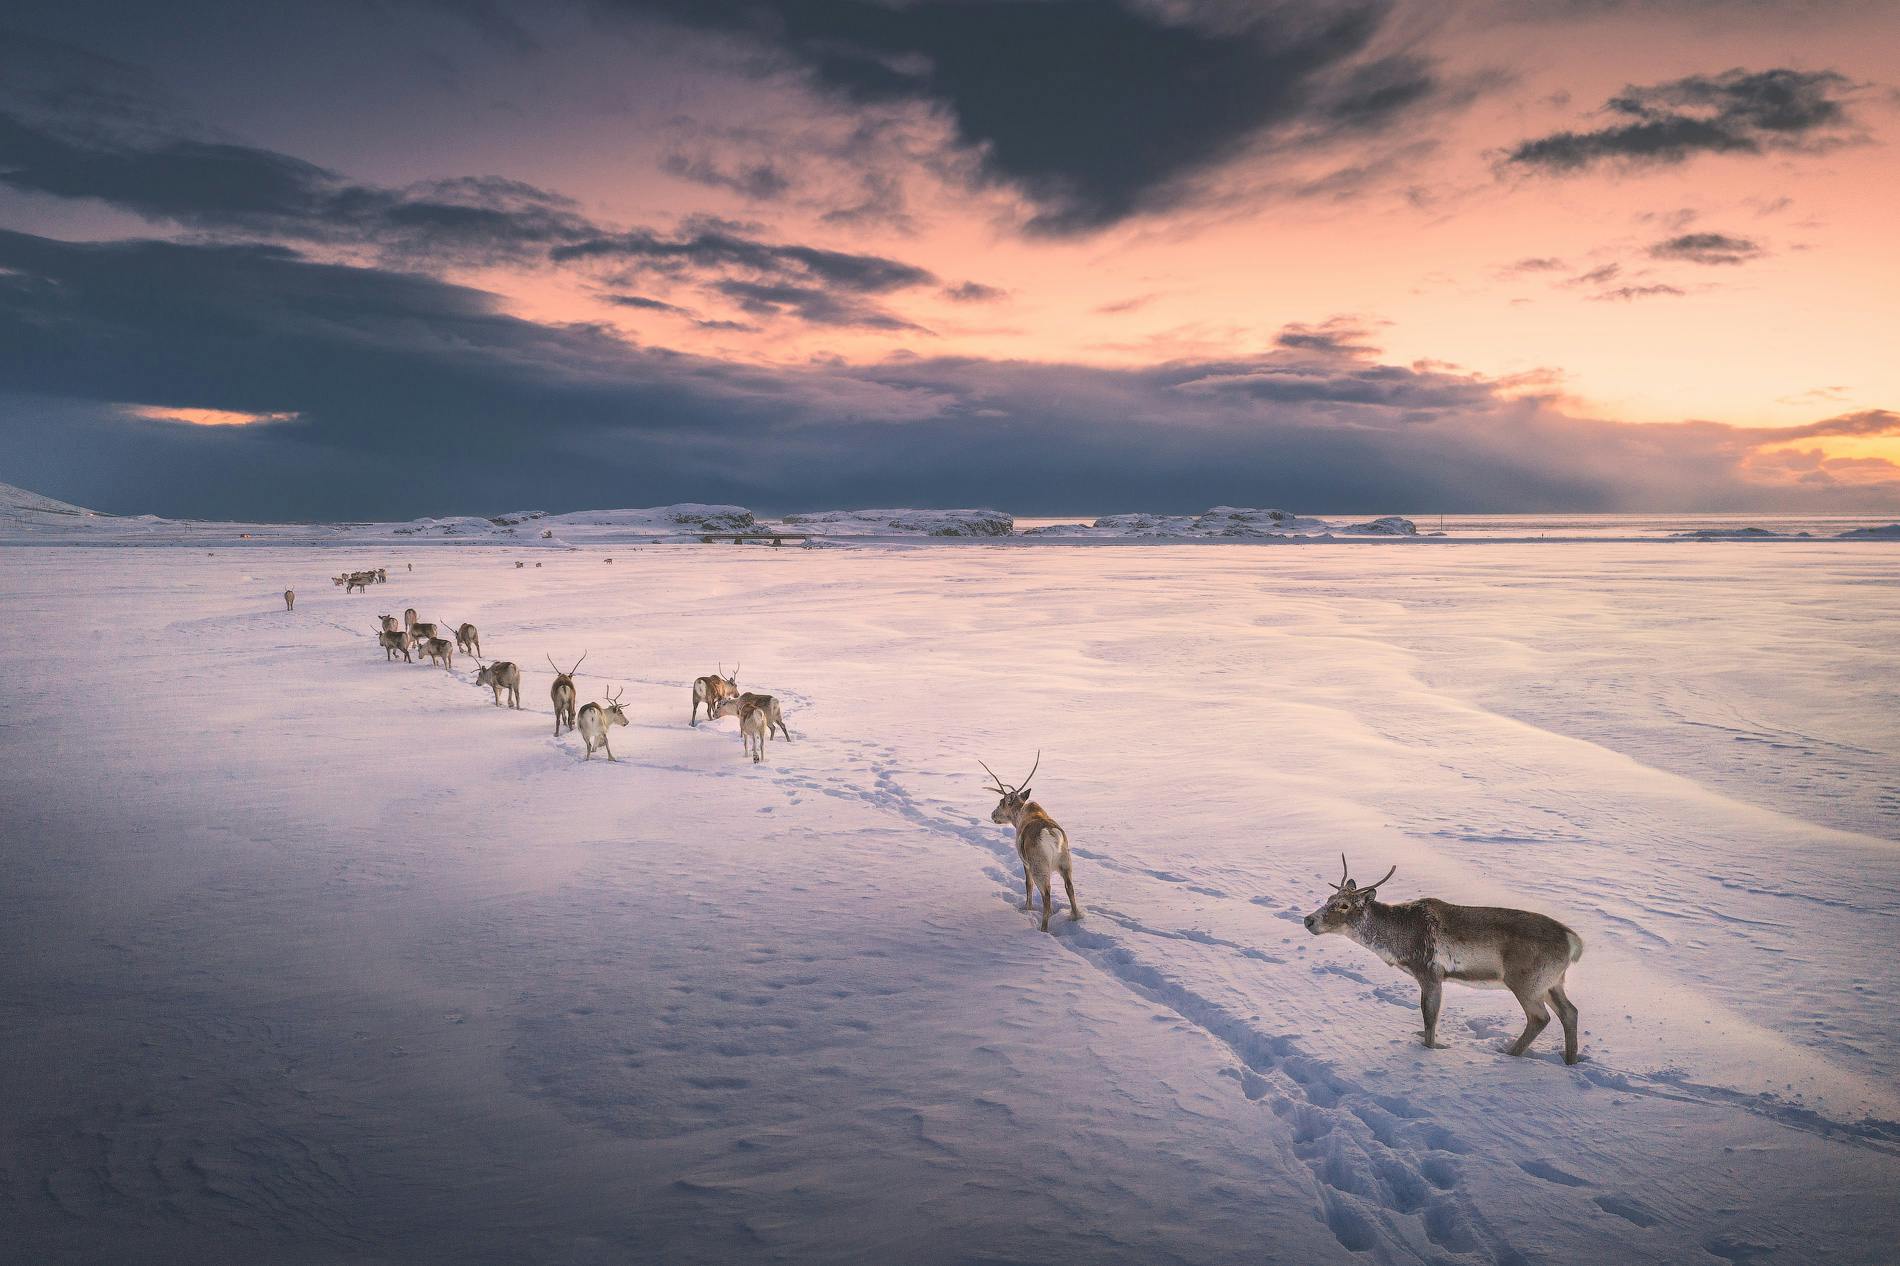 Le renne selvagge pascolano nei fiordi orientali, visto che gli islandesi non le hanno mai allevate veramente.